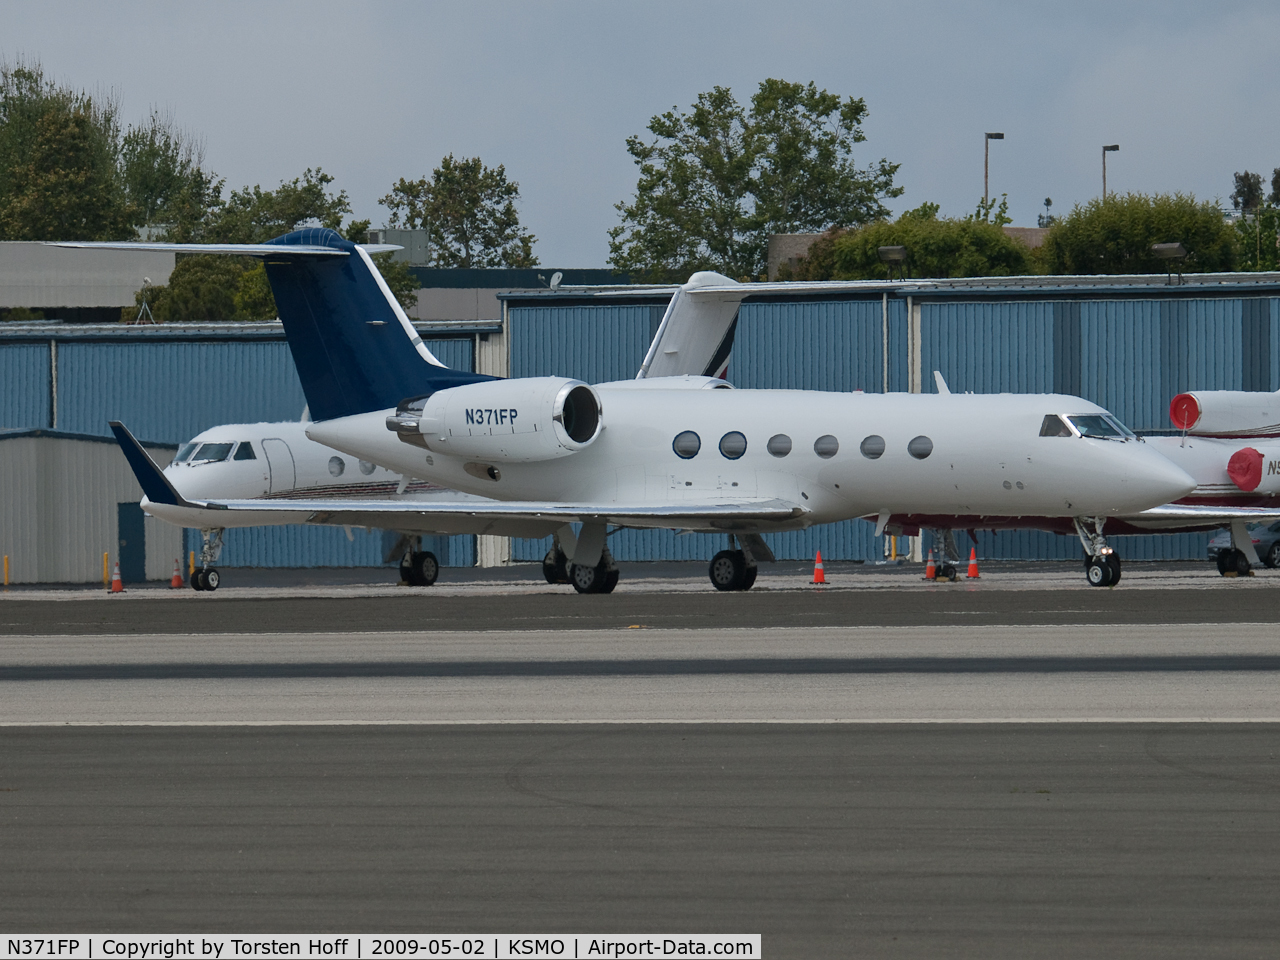 N371FP, 1999 Gulfstream Aerospace G-IV C/N 1371, N371FP taxiing